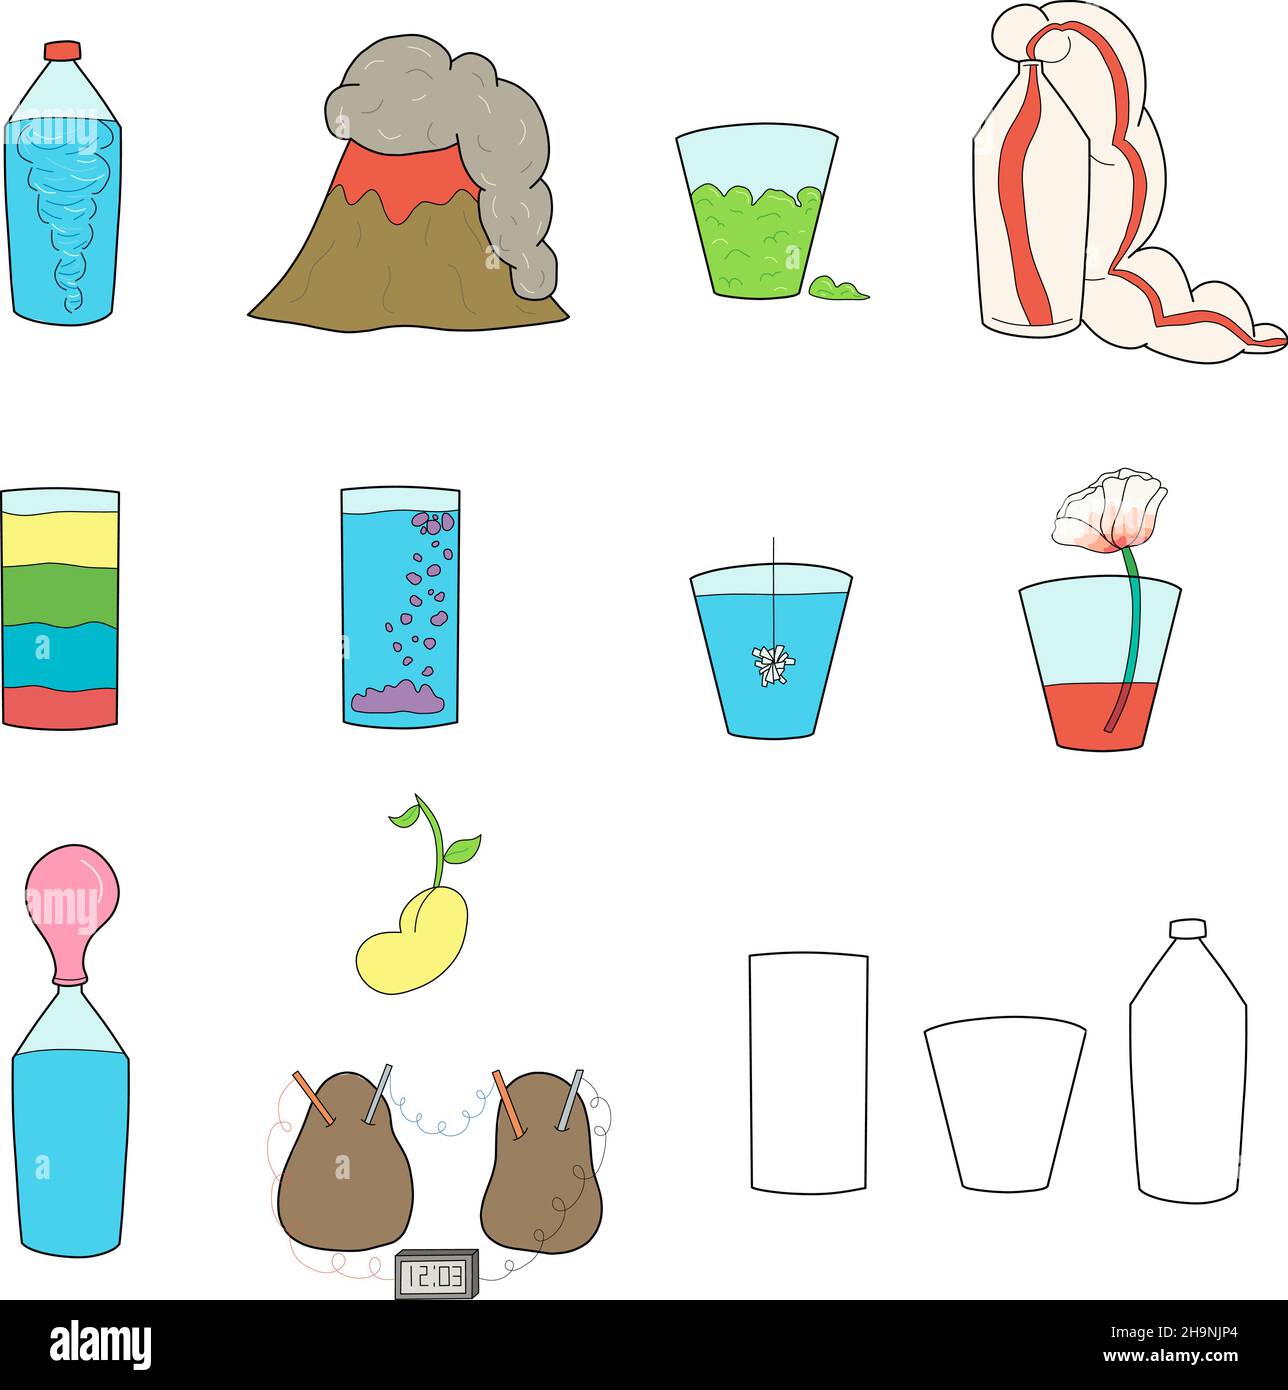 Illustrazioni vettoriali a colori disegnate a mano di progetti di scienza educativa per bambini, tra cui vulcano, calce, cristallo, piante e dentifricio elefante Illustrazione Vettoriale